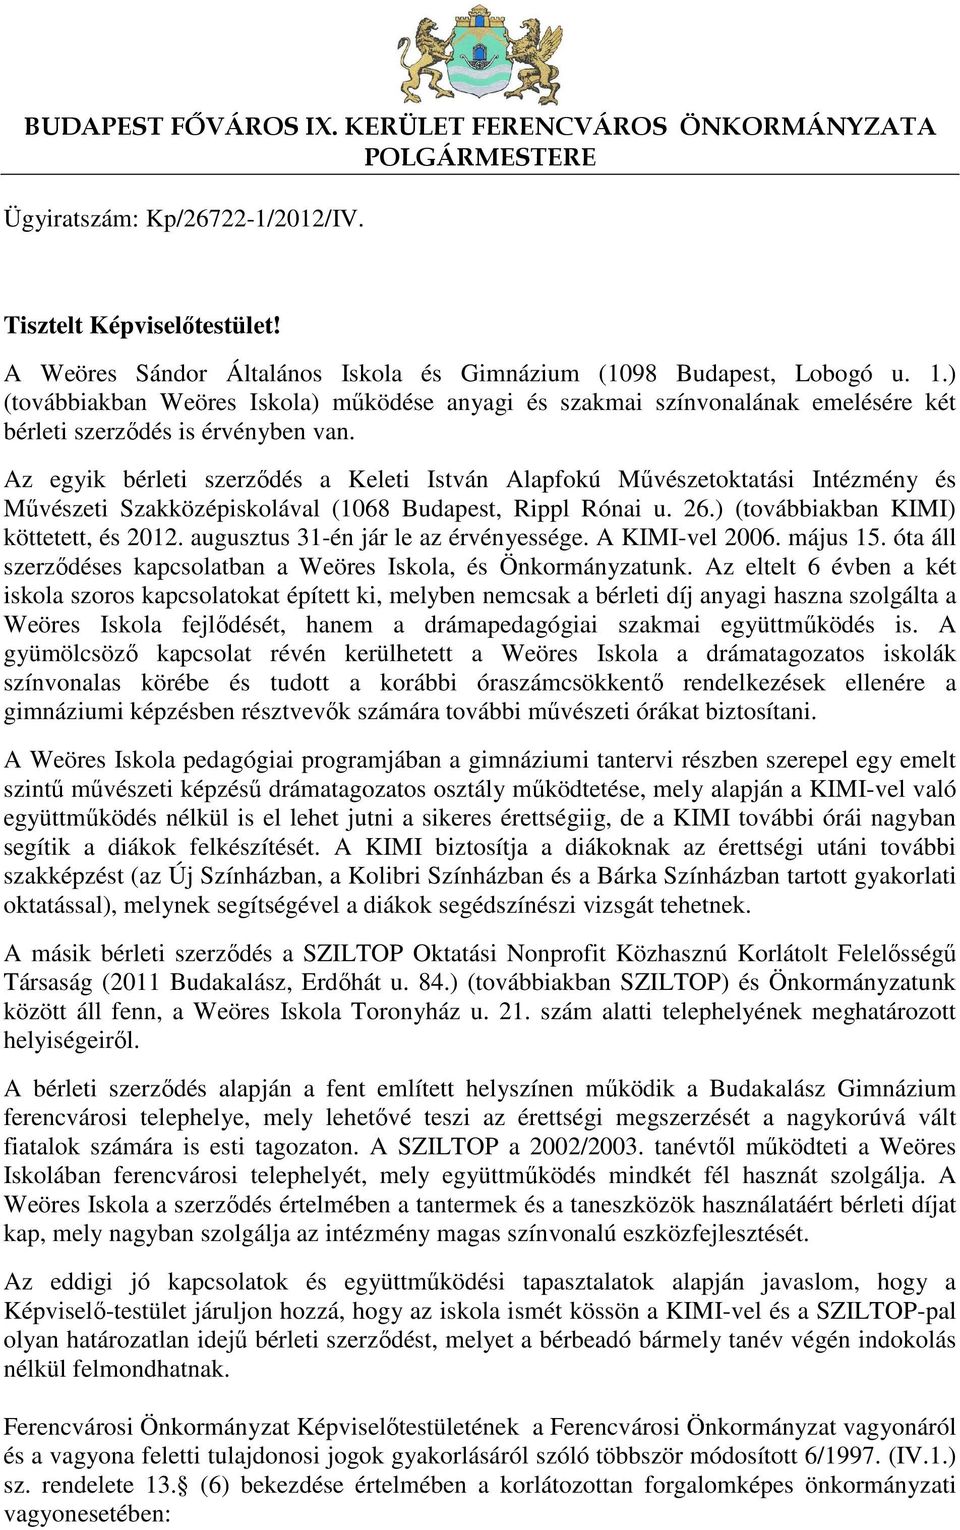 Az egyik bérleti szerződés a Keleti István Alapfokú Művészetoktatási Intézmény és Művészeti Szakközépiskolával (1068 Budapest, Rippl Rónai u. 26.) (továbbiakban KIMI) köttetett, és 2012.